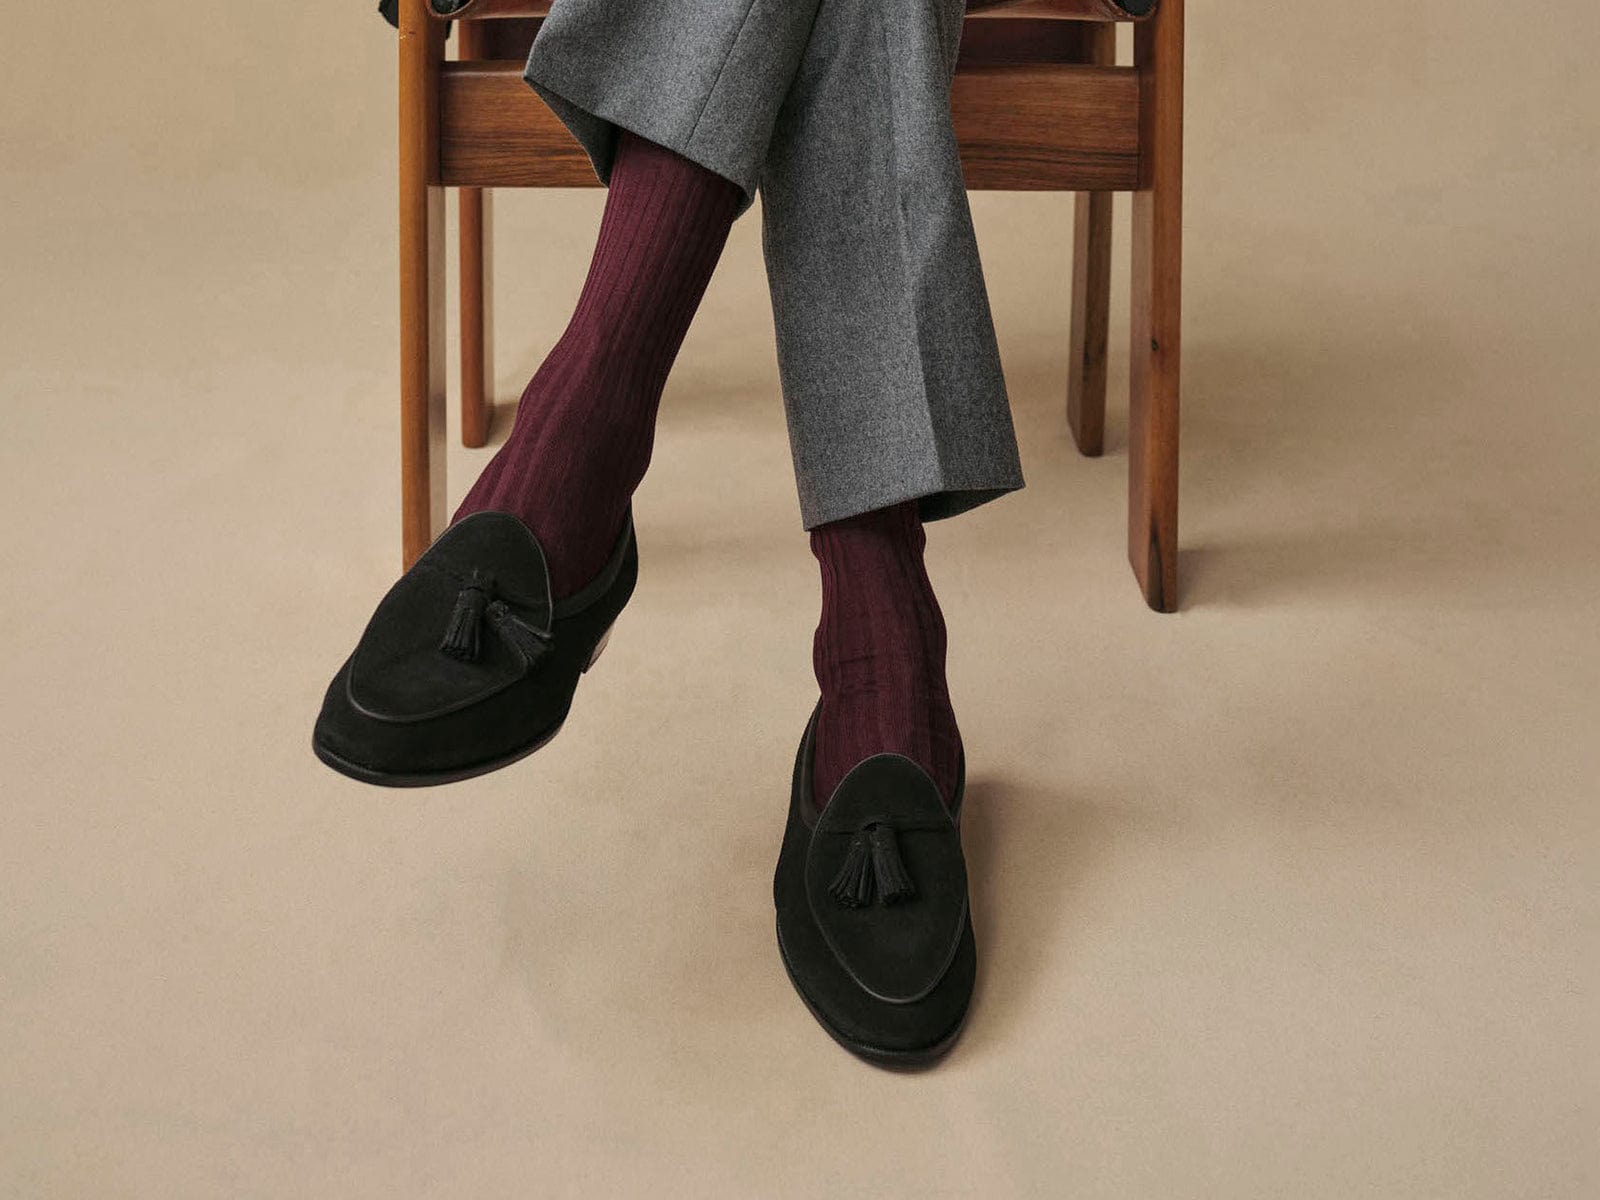 Men's Socks for Loafers, Elegant Loafer Socks